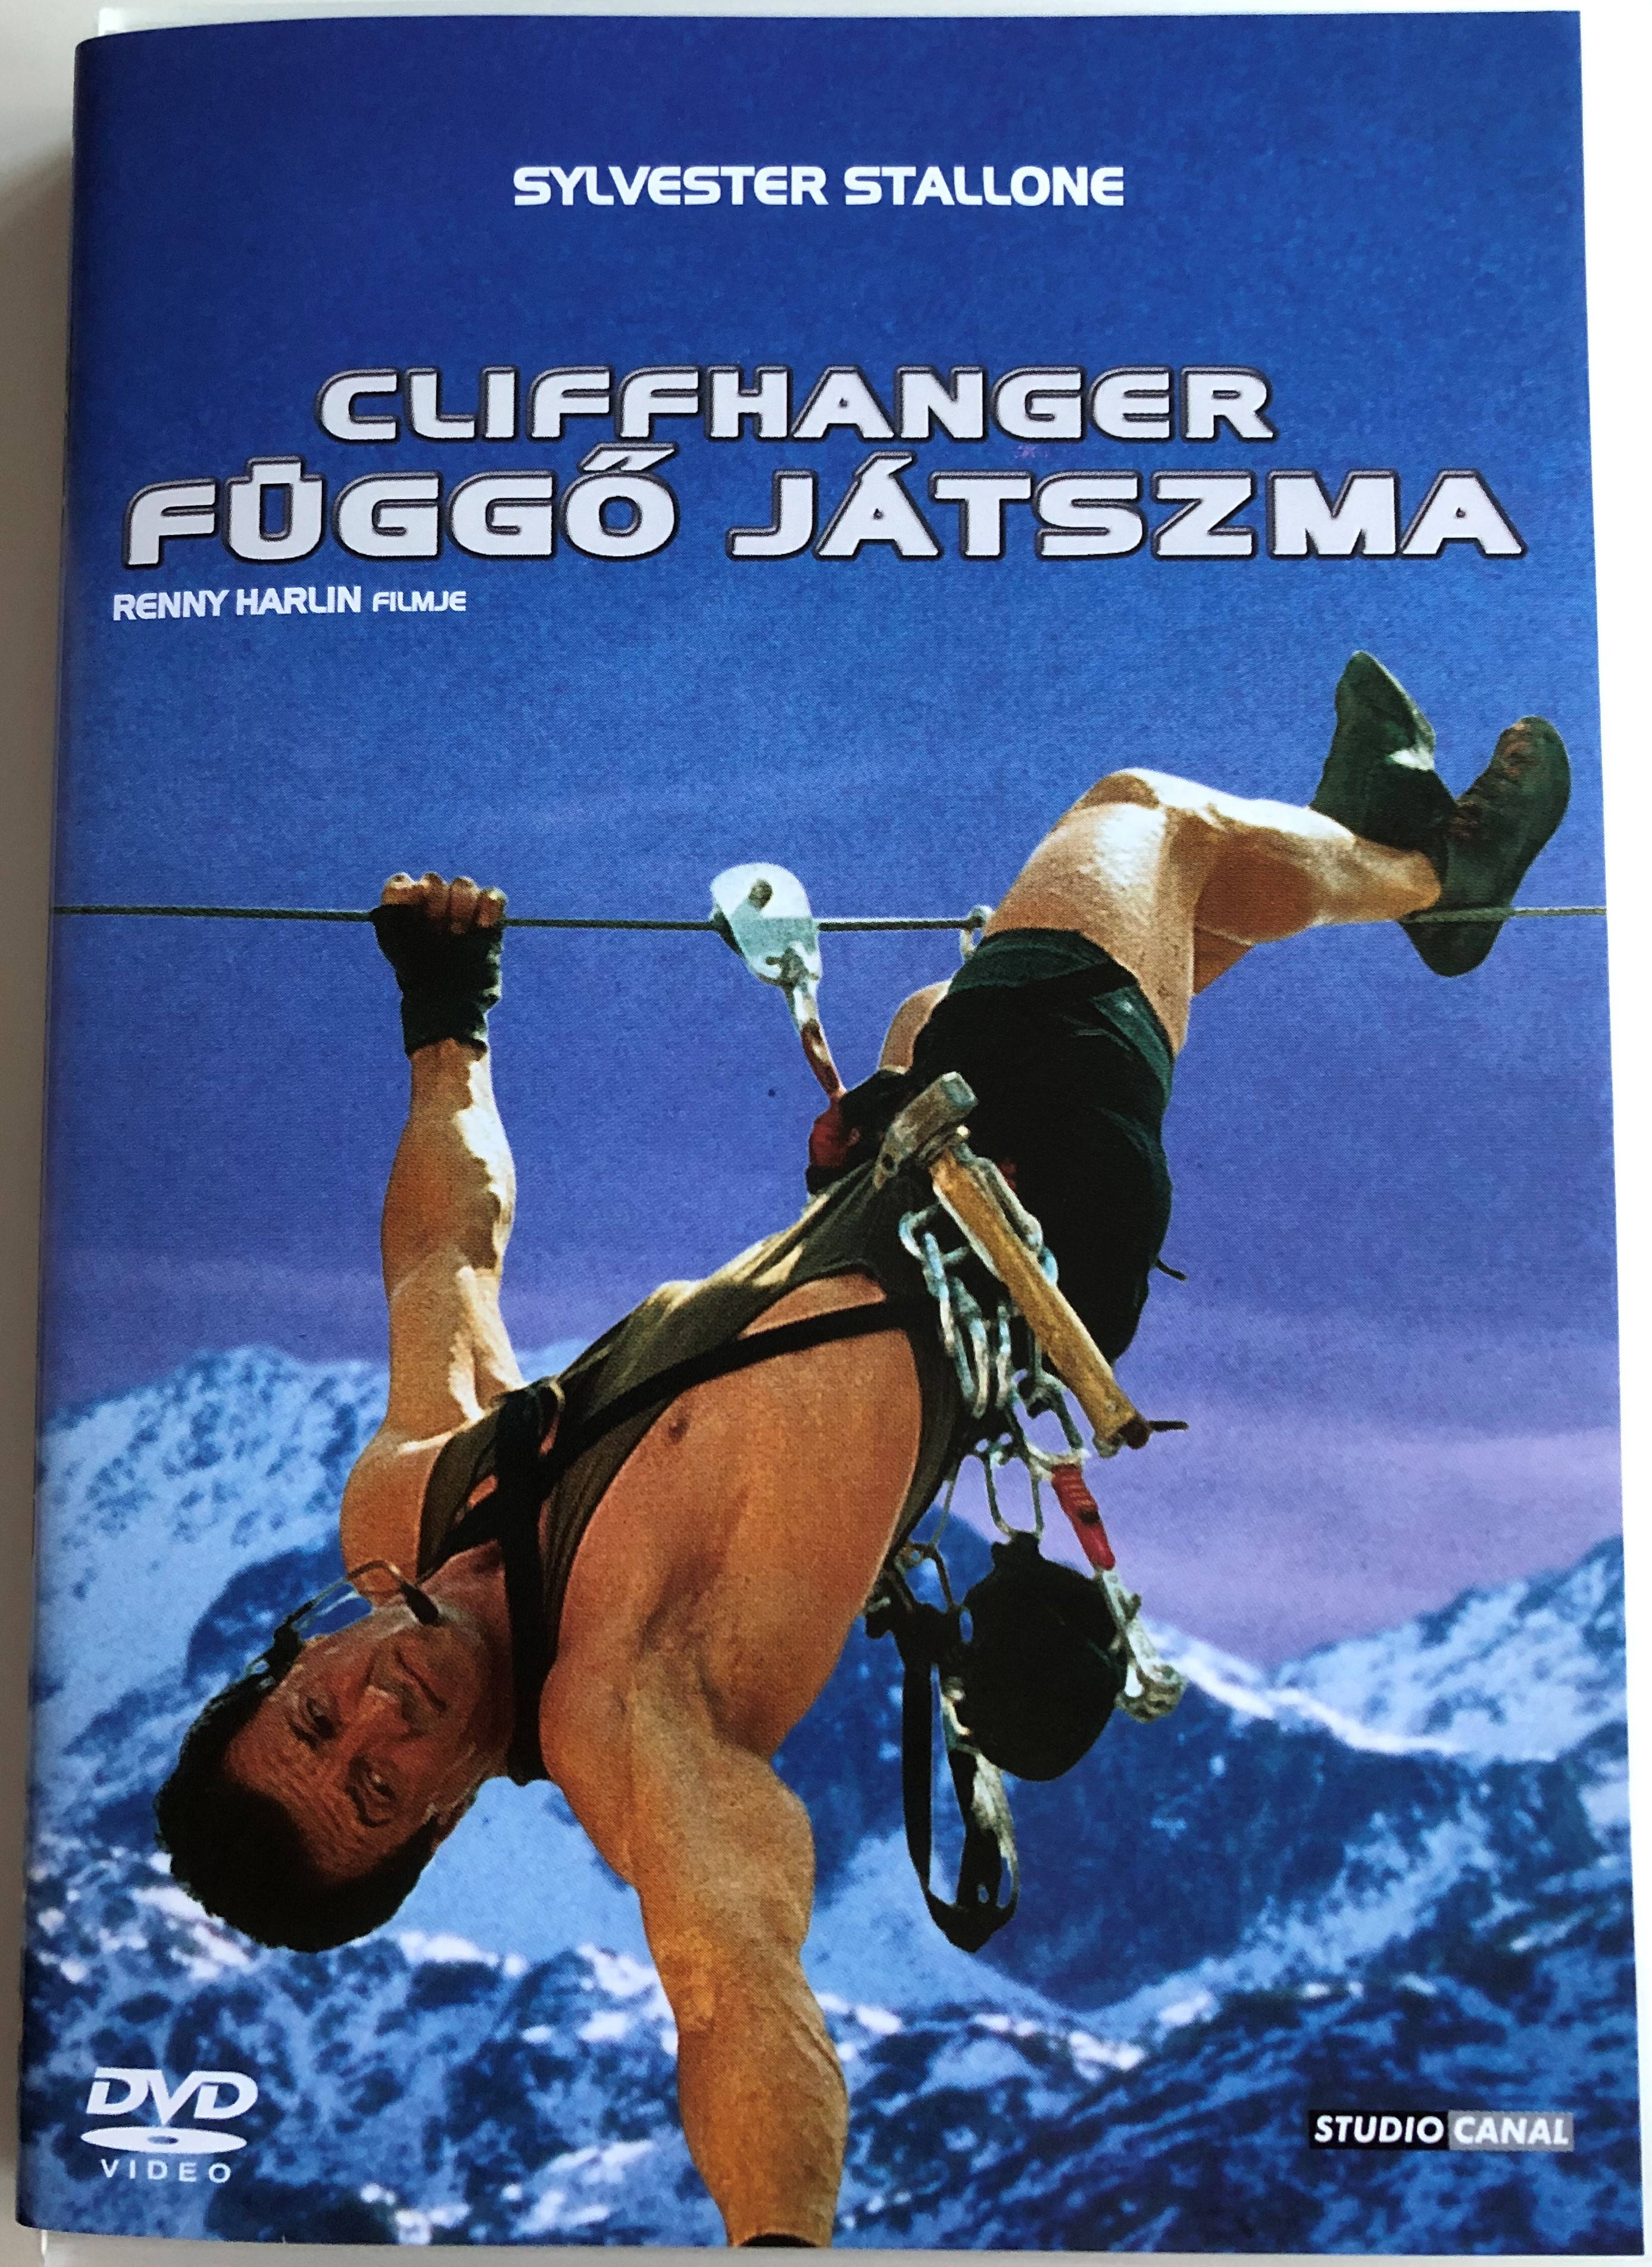 Cliffhanger 1993 Függő Játszma DVD 1.JPG